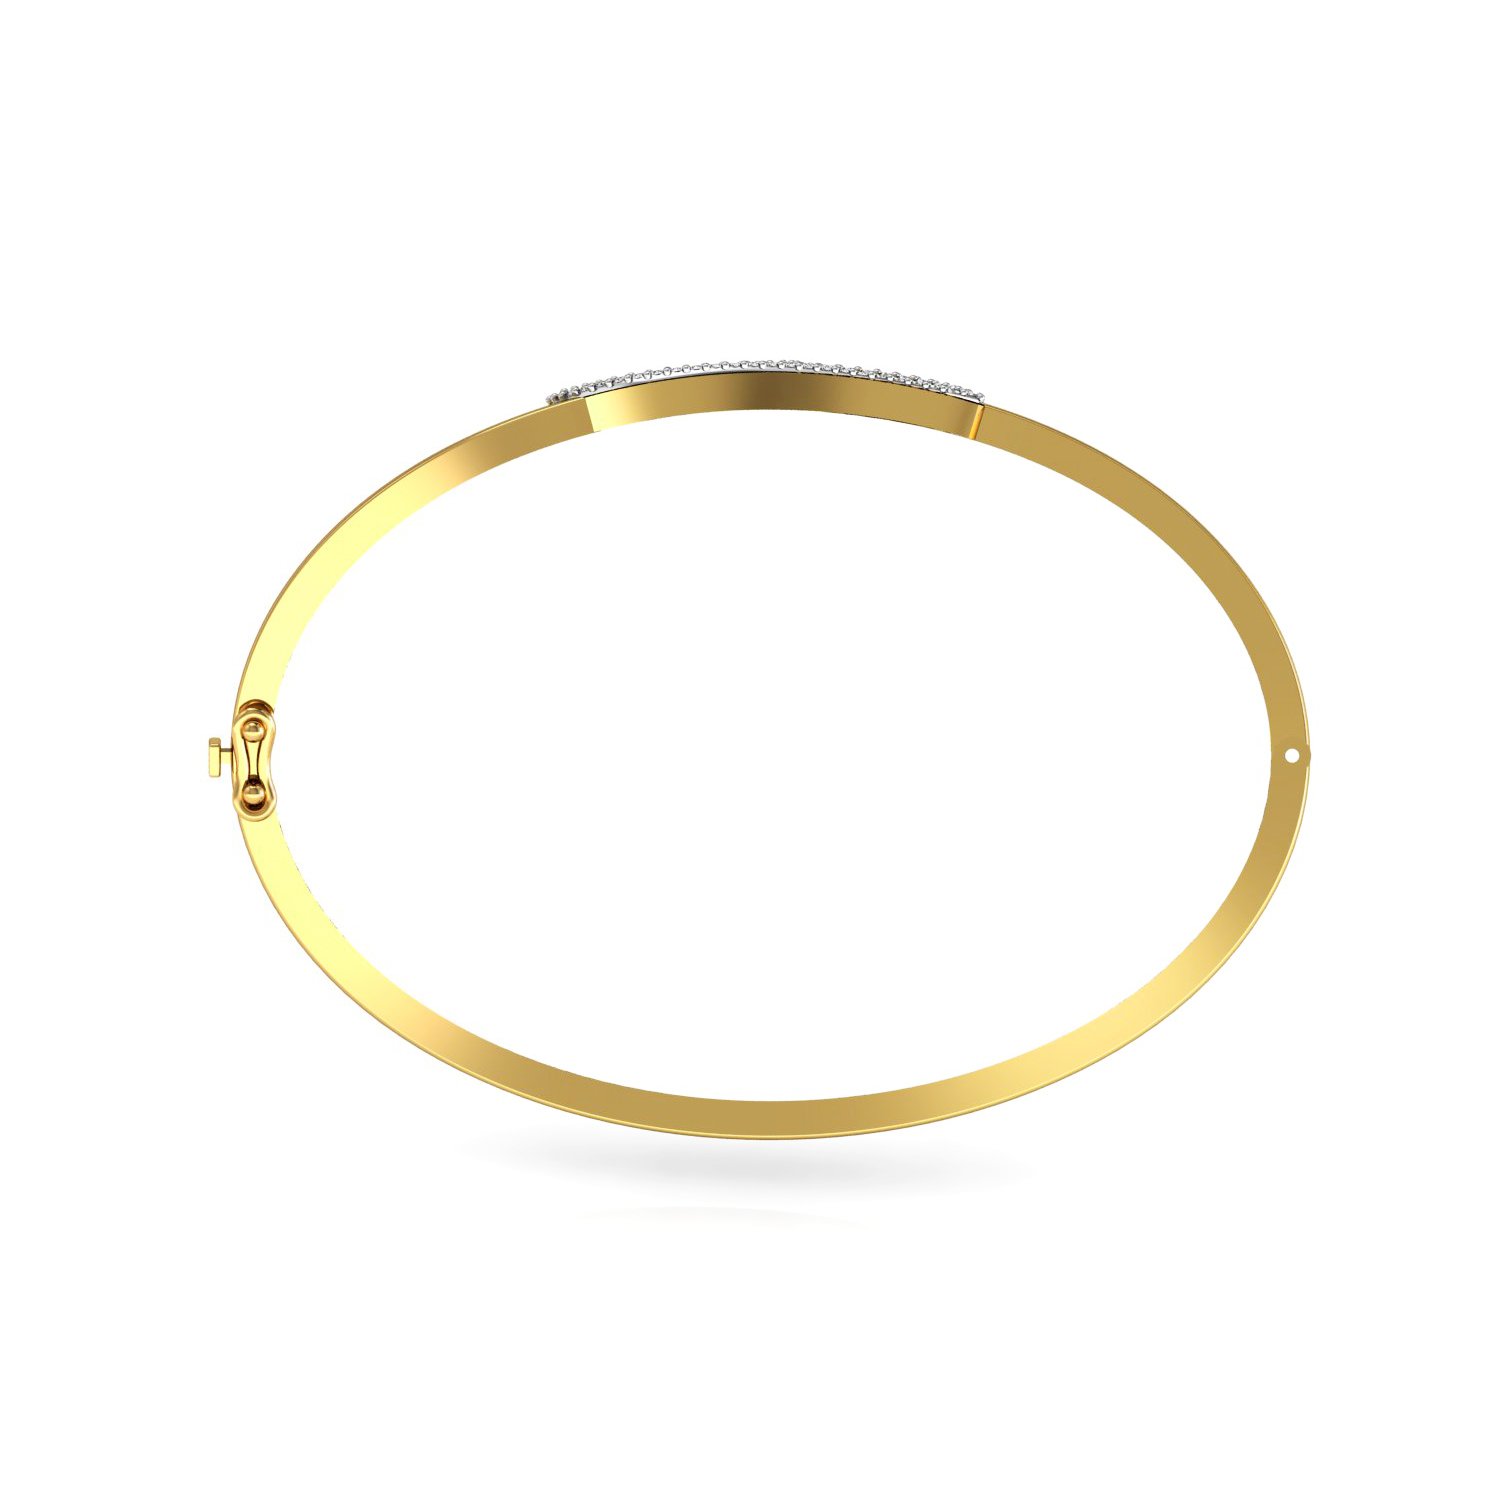 Solid gold leaf bracelet in real diamond